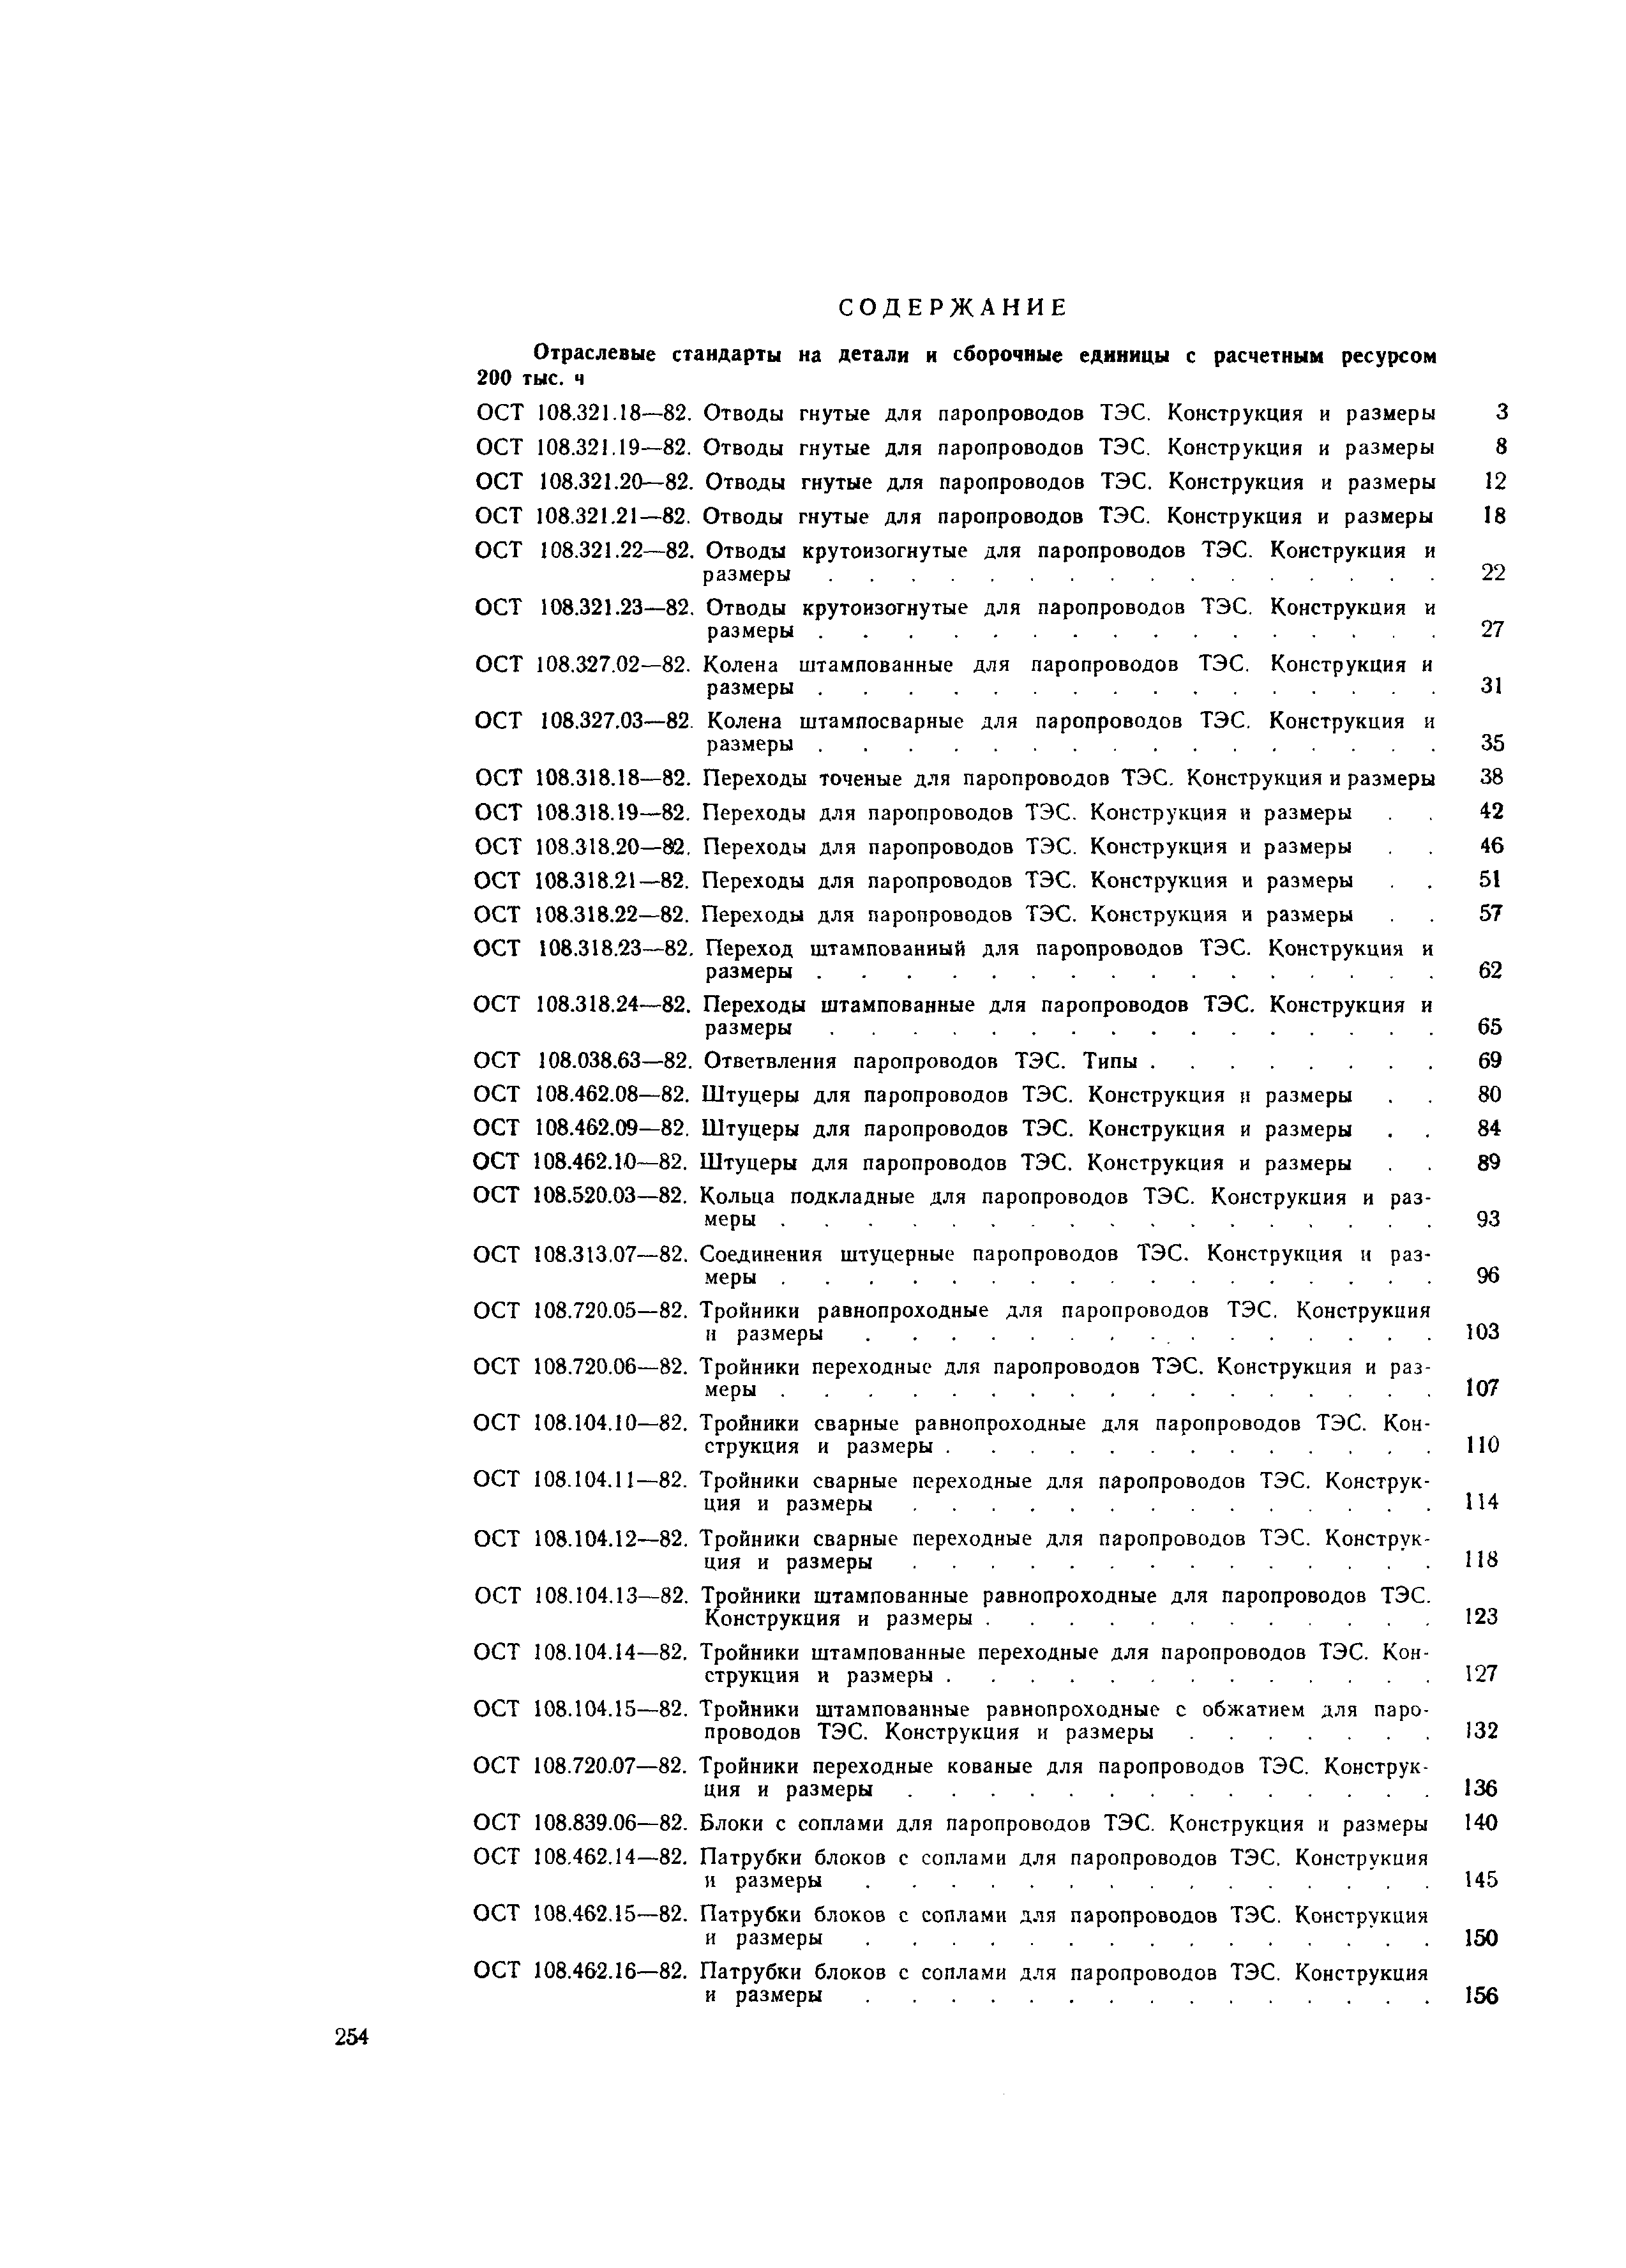 ОСТ 108.318.20-82